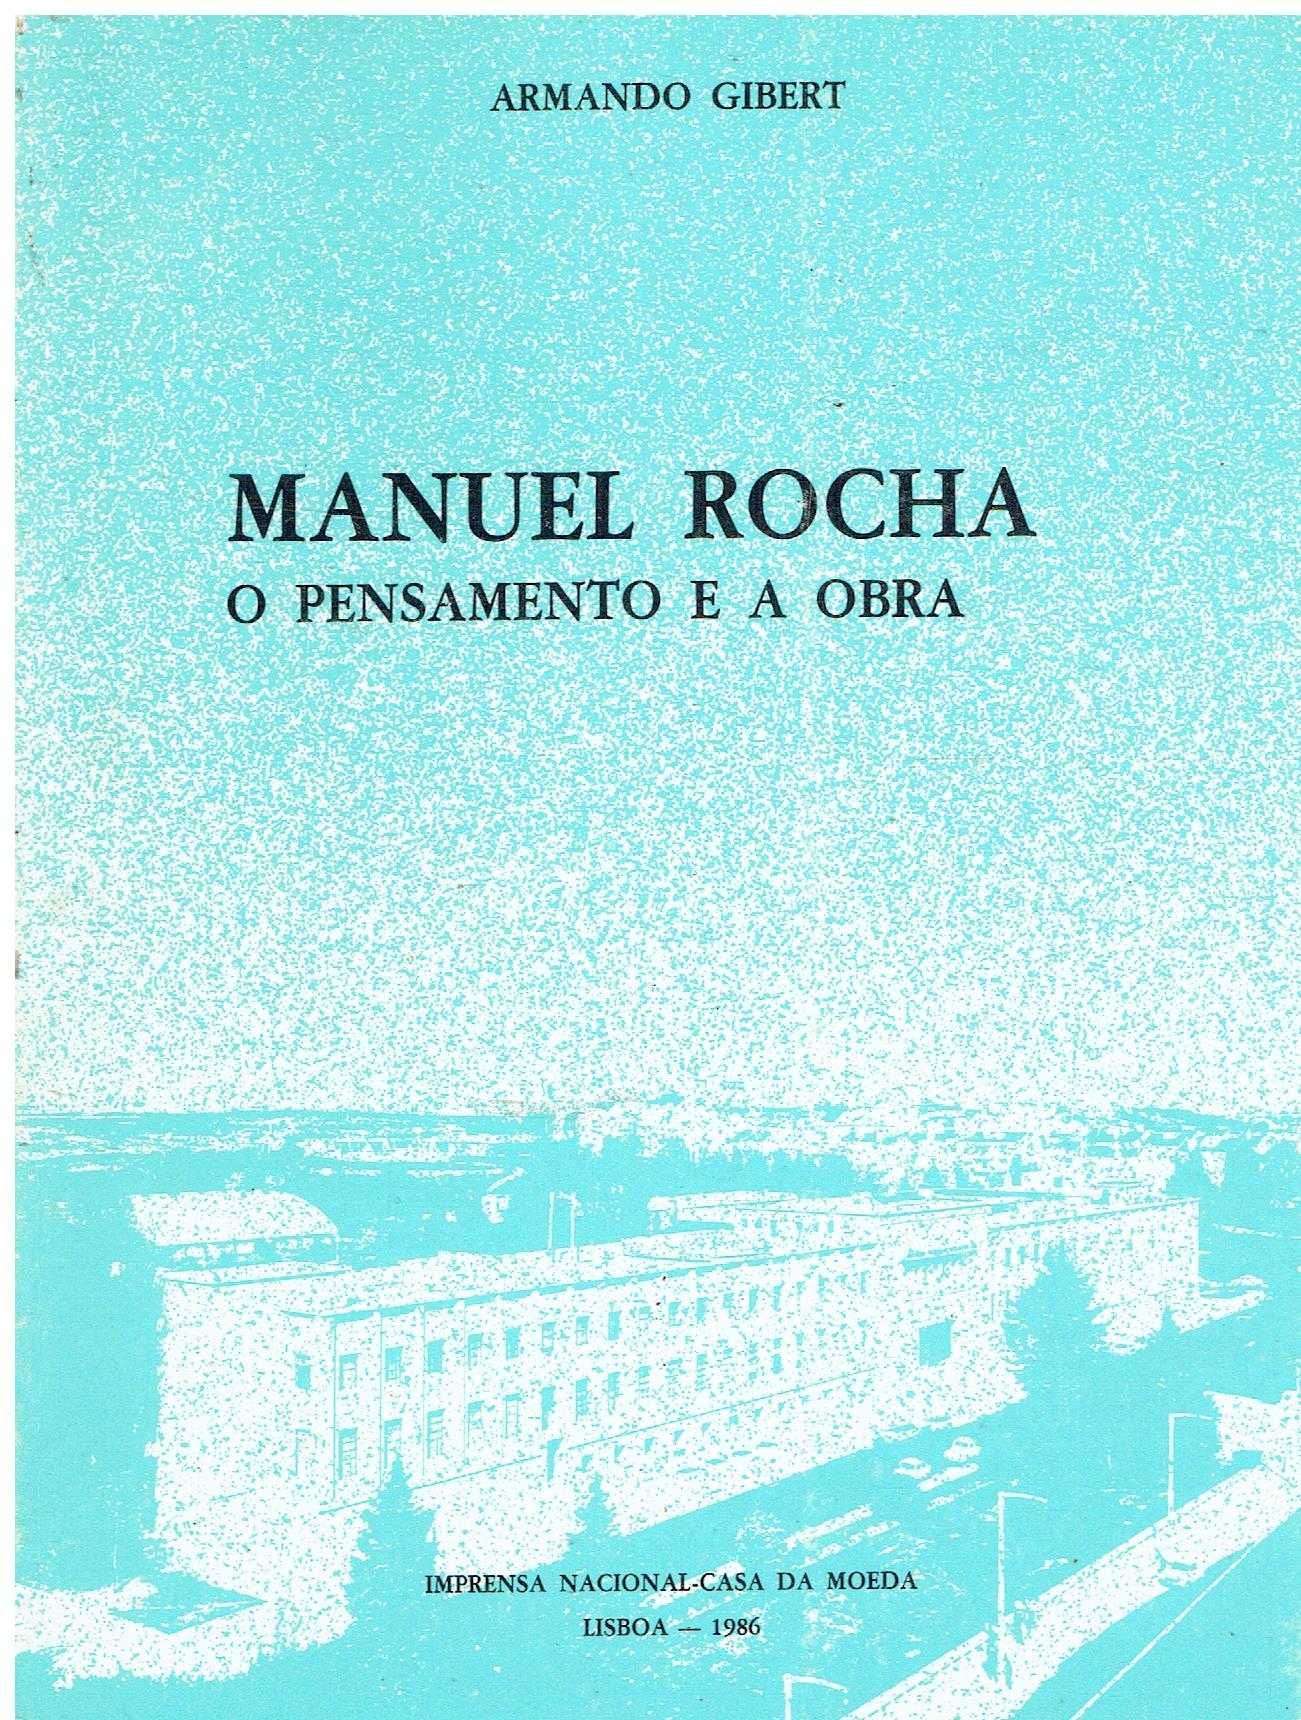 14132

Manuel Rocha - O Pensamento e a Obra
de Armando Gibert